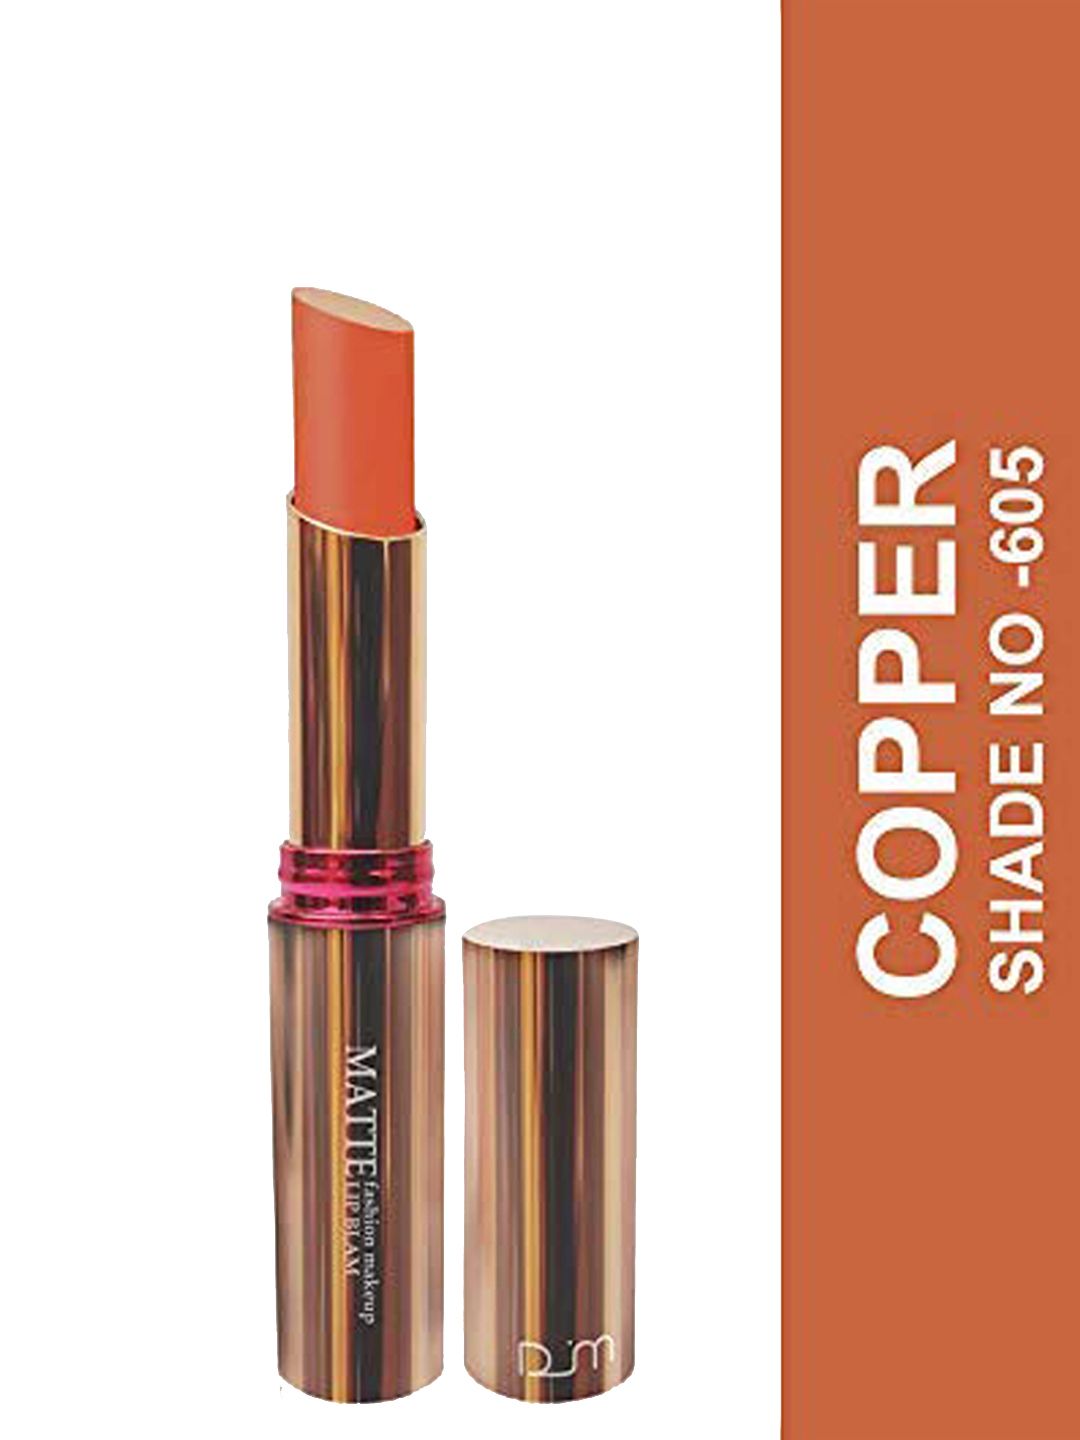 Seven Seas Matte With You Lipstick, 3.8gm - Copper Price in India